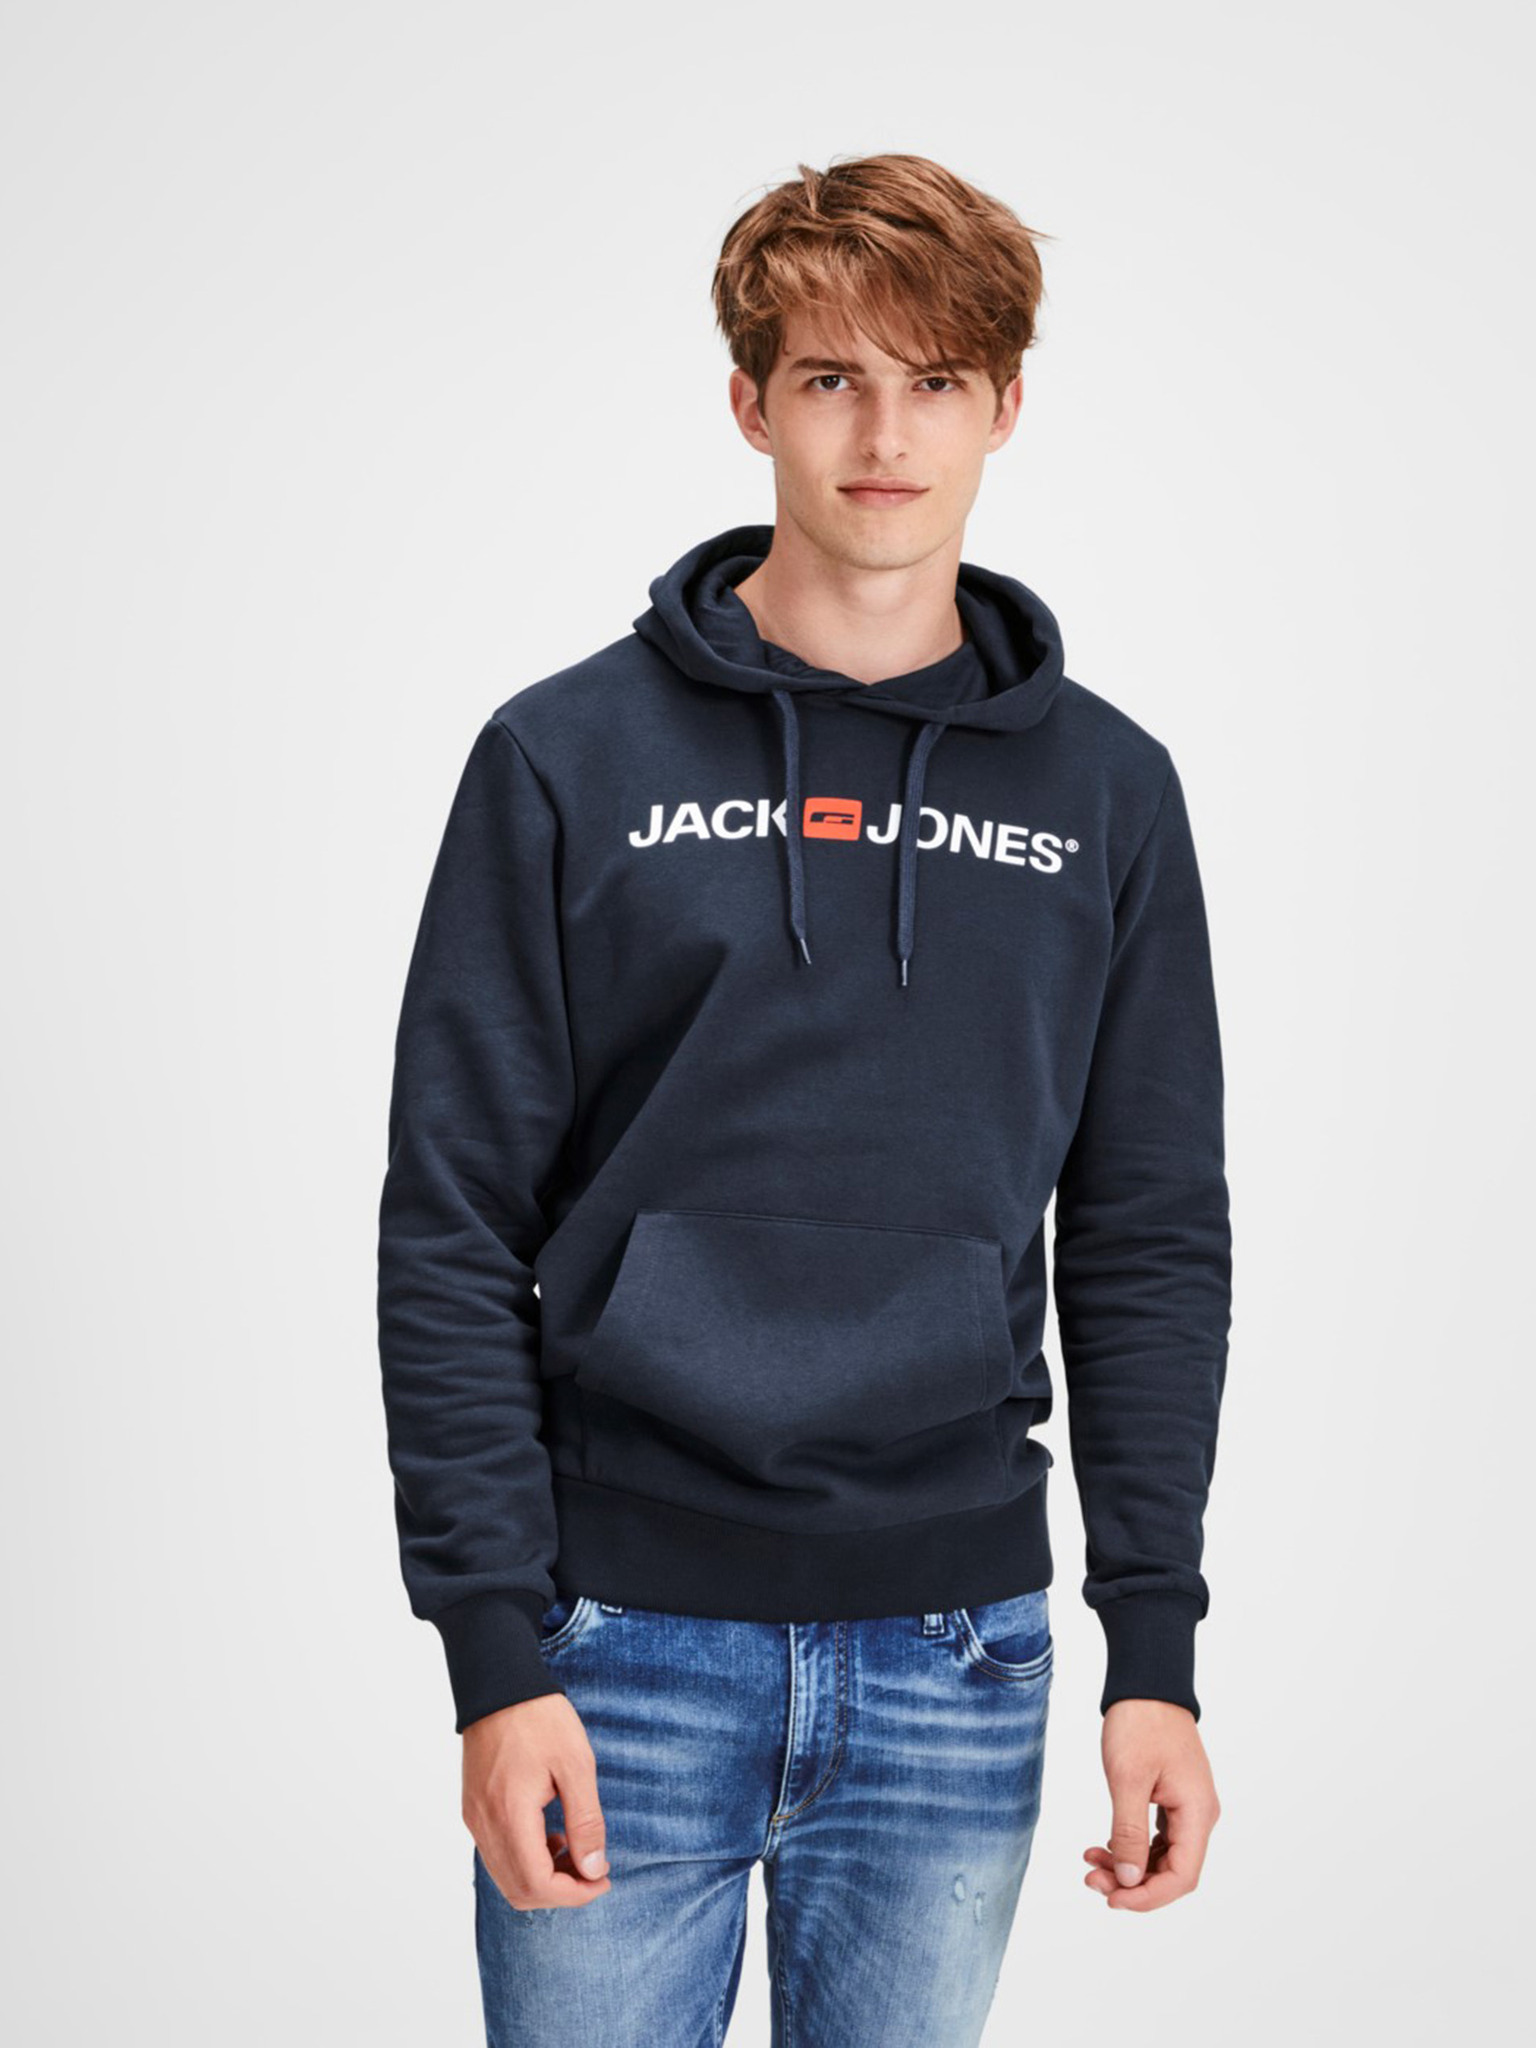 Jack & Jones - Corp Sweatshirt